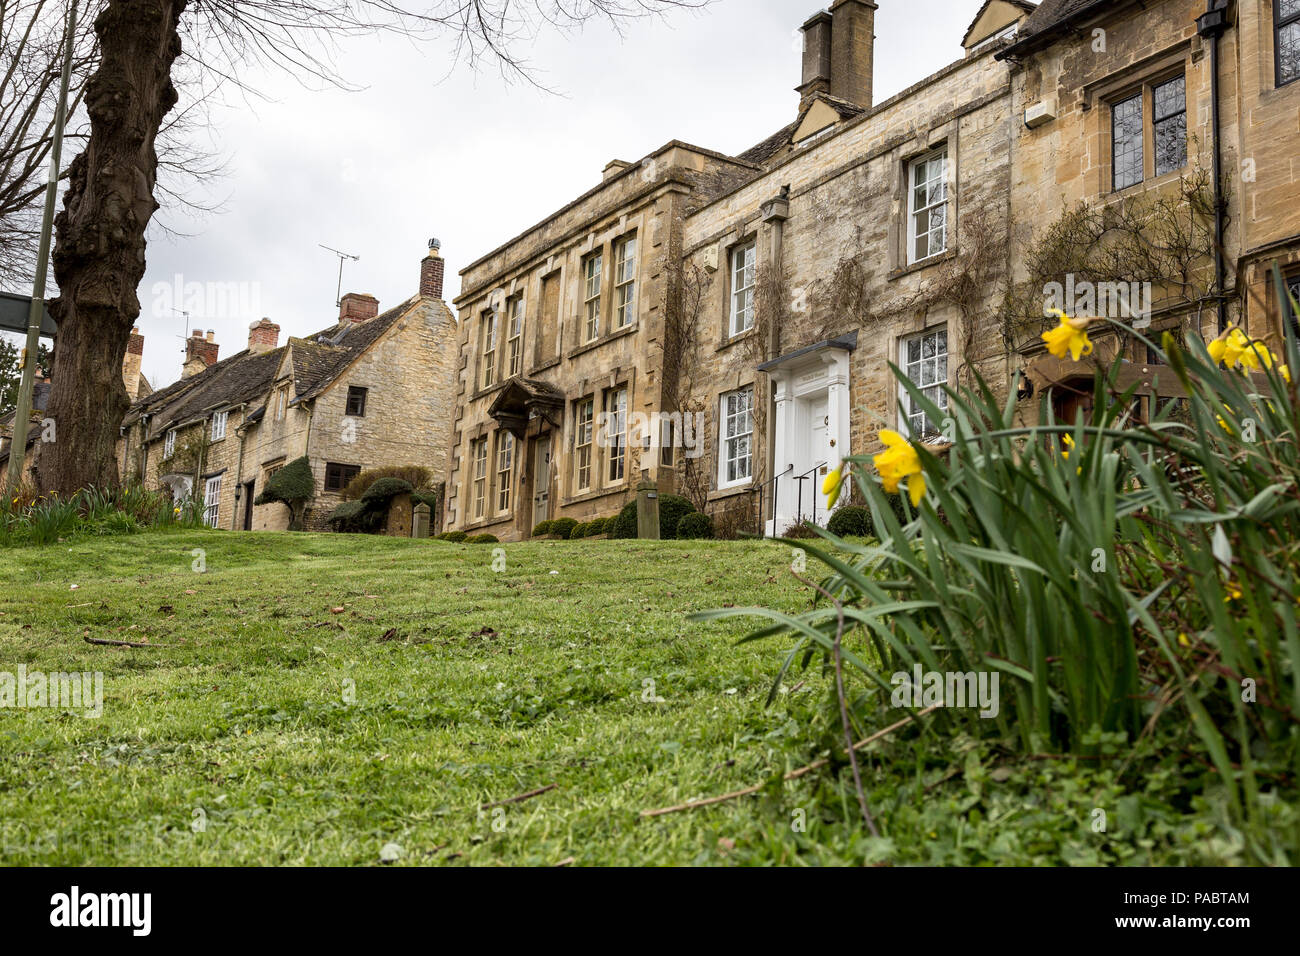 Architecture de Burford, un beau village médiéval dans l'Oxfordshire, Angleterre. Banque D'Images